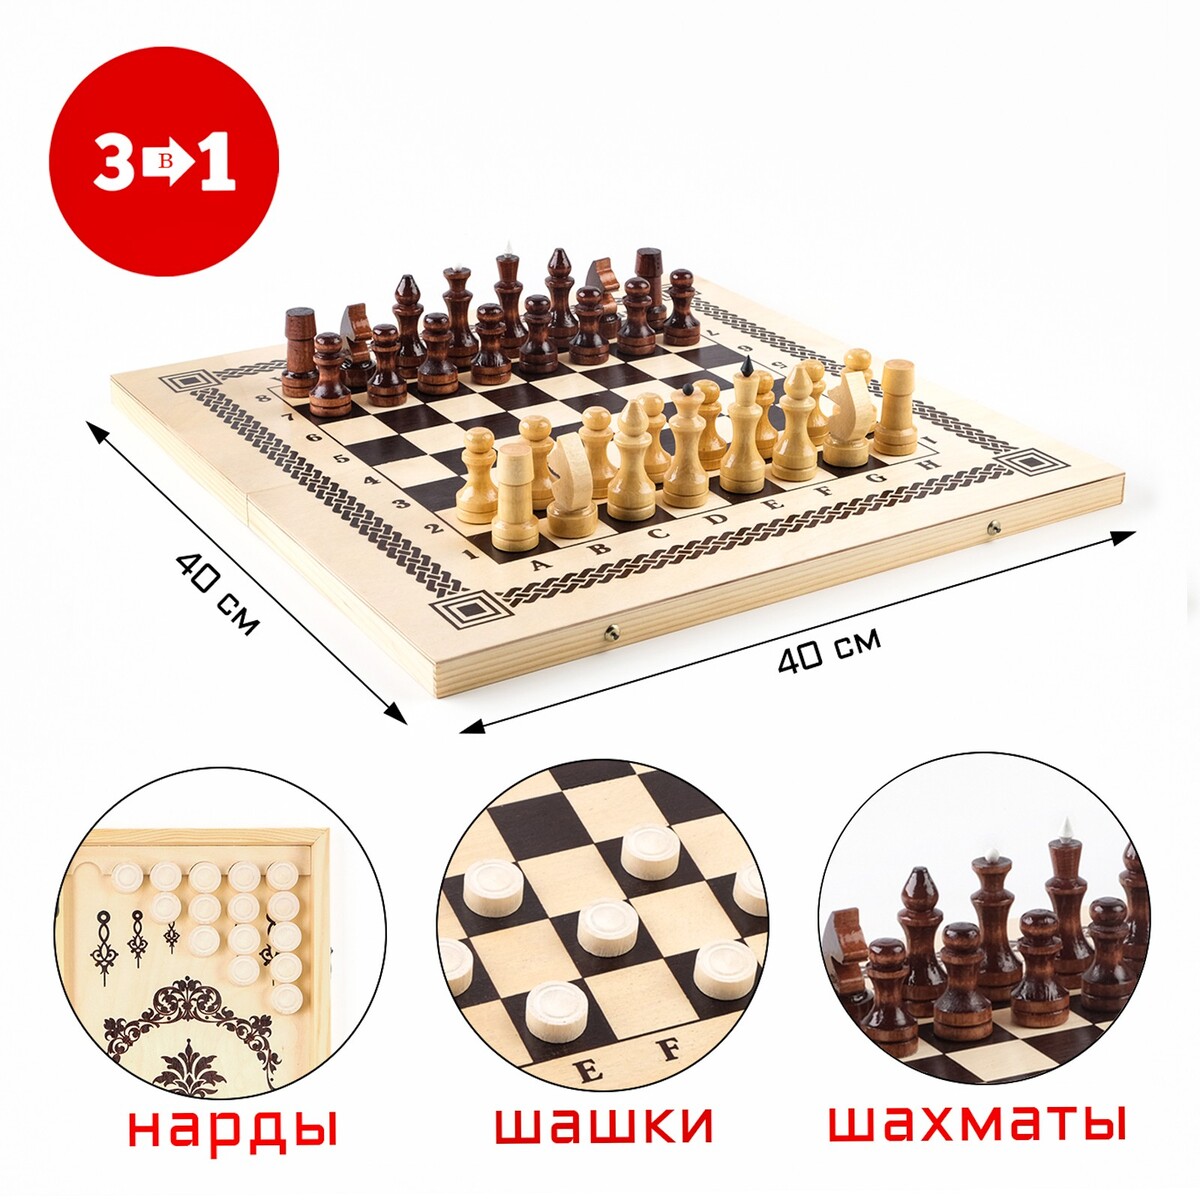 Настольная игра 3 в 1: нарды, шашки, шахматы, 40 х 40 см нарды шашки сирия башня малые настольная игра рфн rasbash40